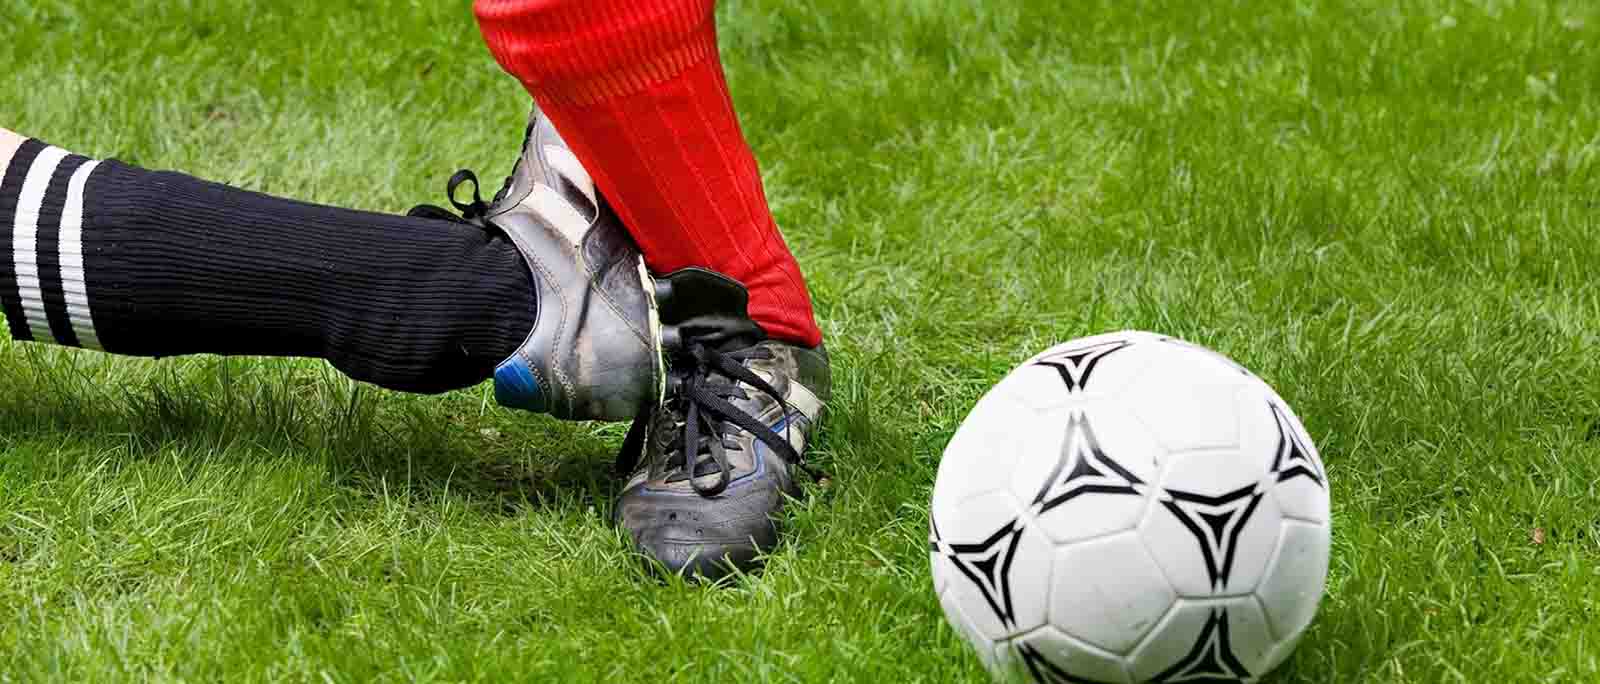 Protège-tibias de football pour les jeunes enfants, protège-tibia